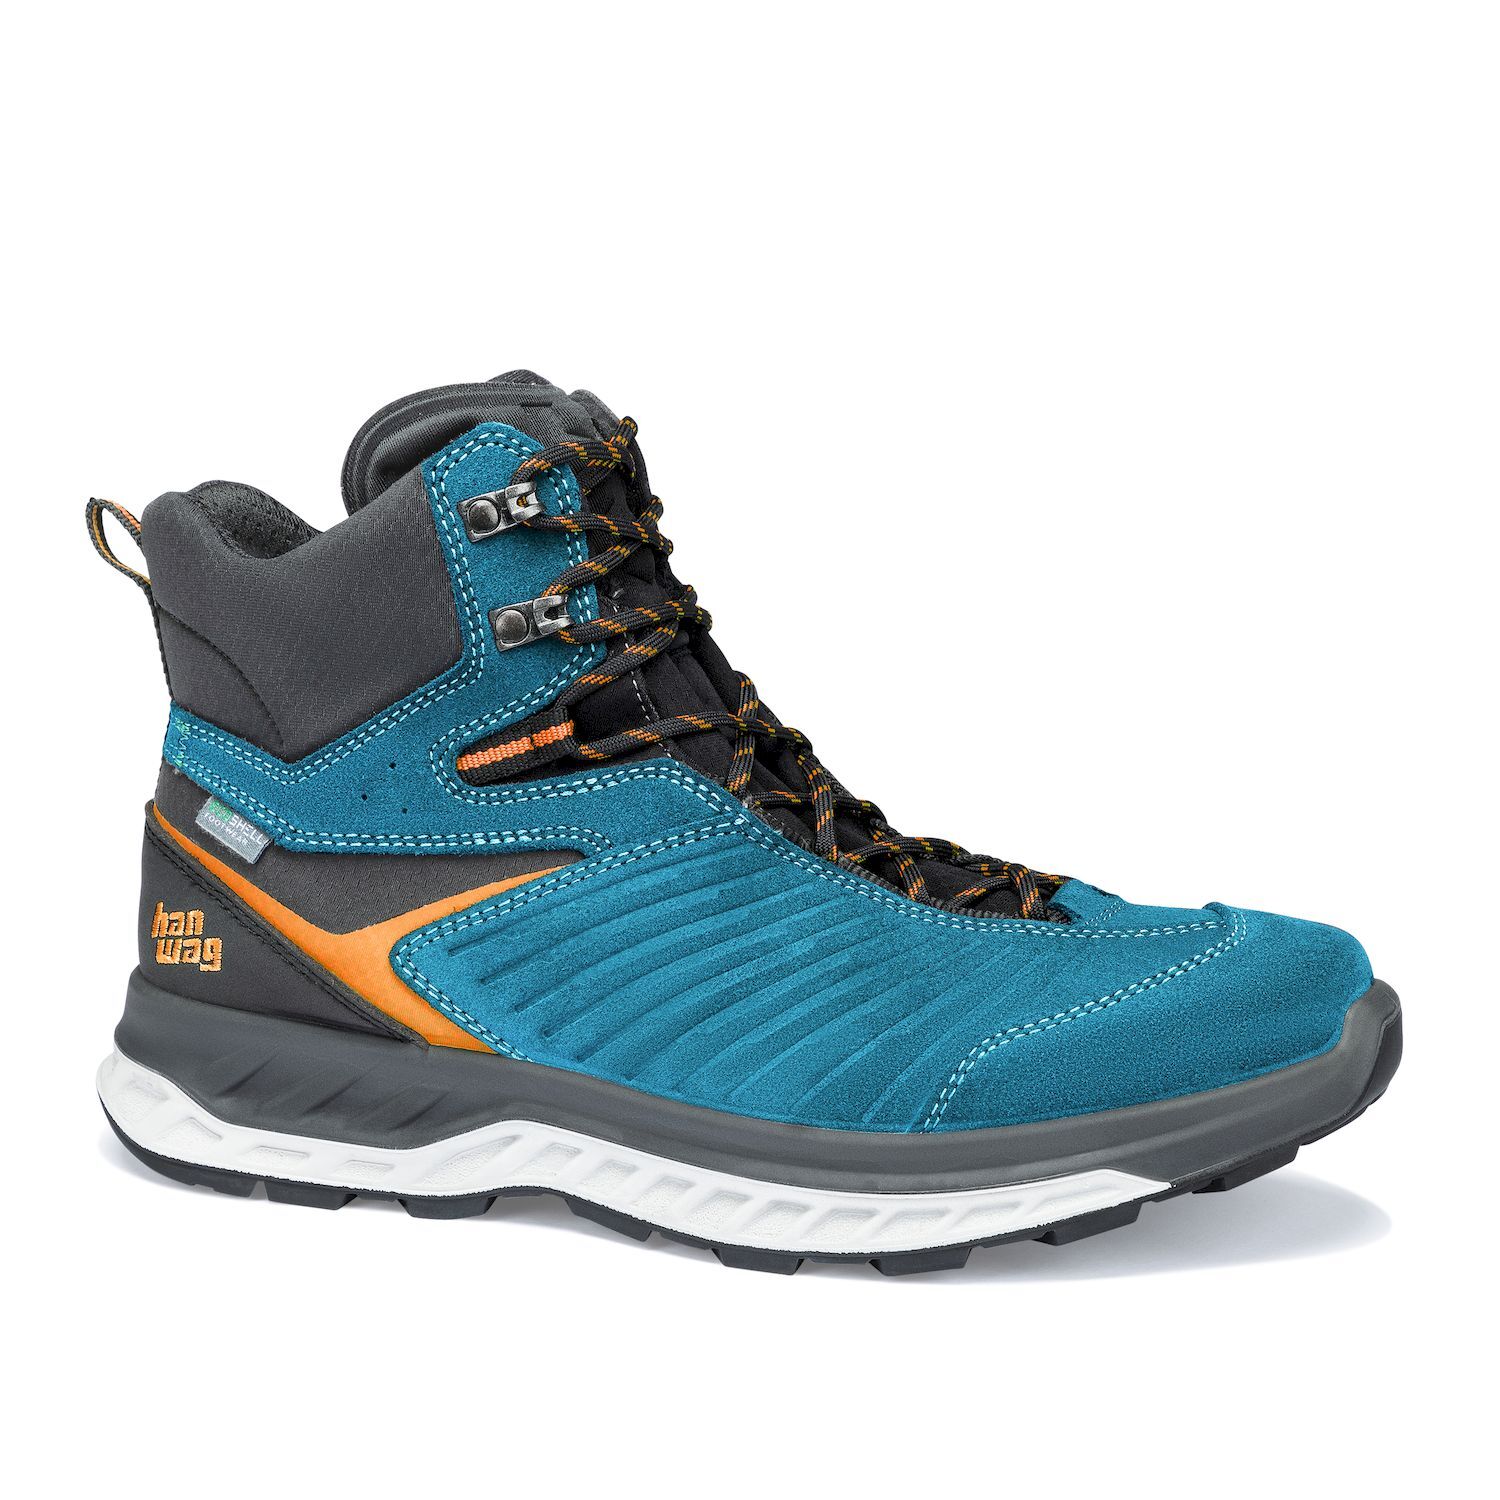 Hanwag Blueridge ES - Hiking shoes - Men's